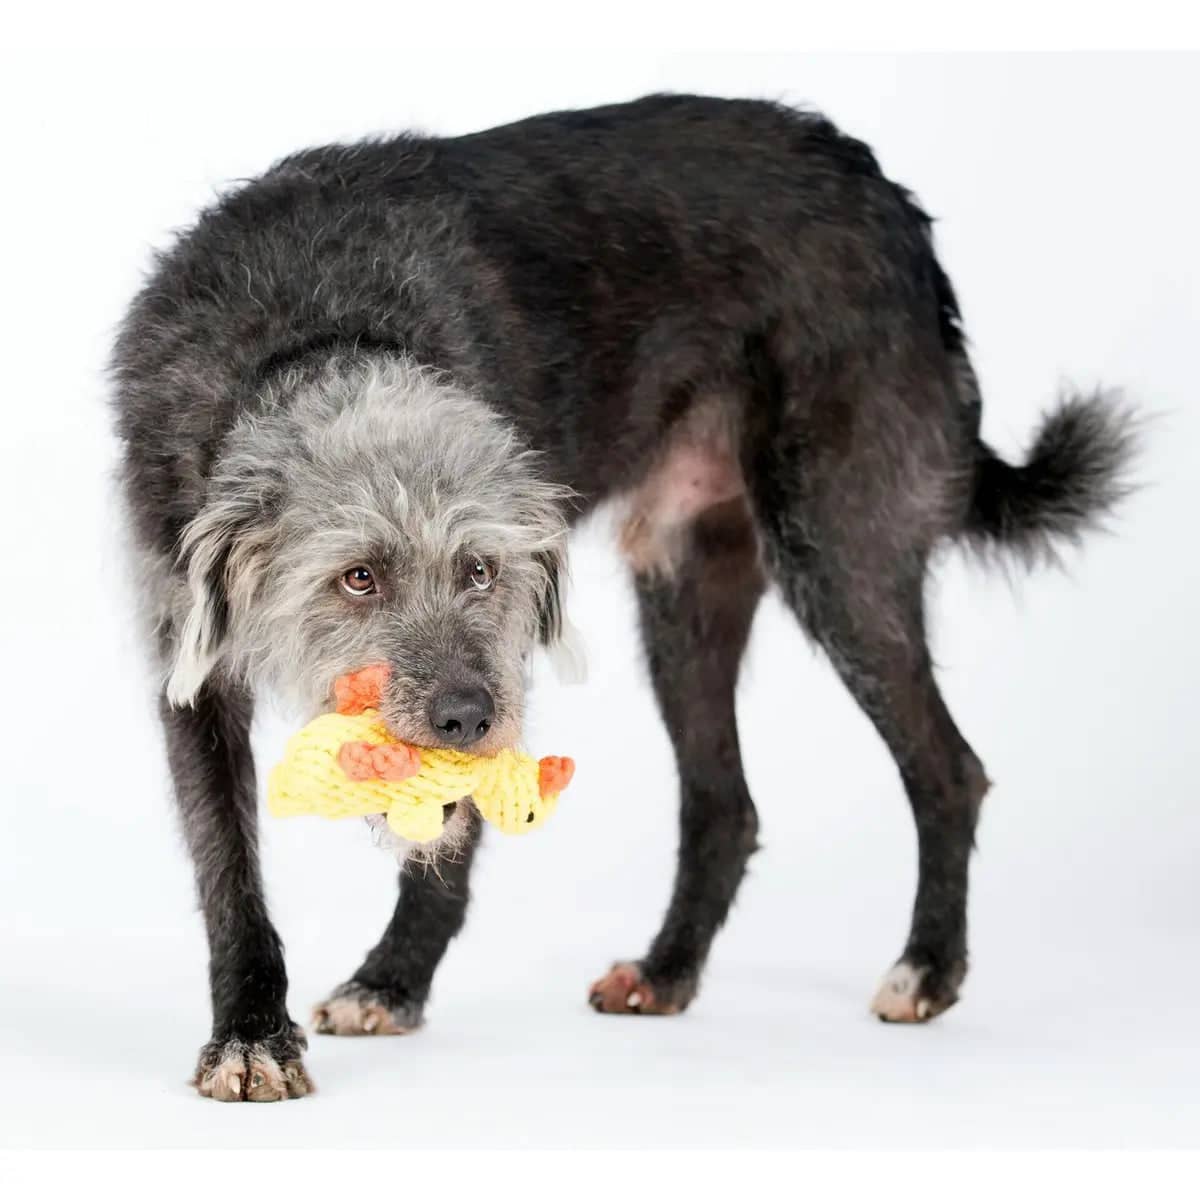 LABONI dog toy Emma Ente tested for safety